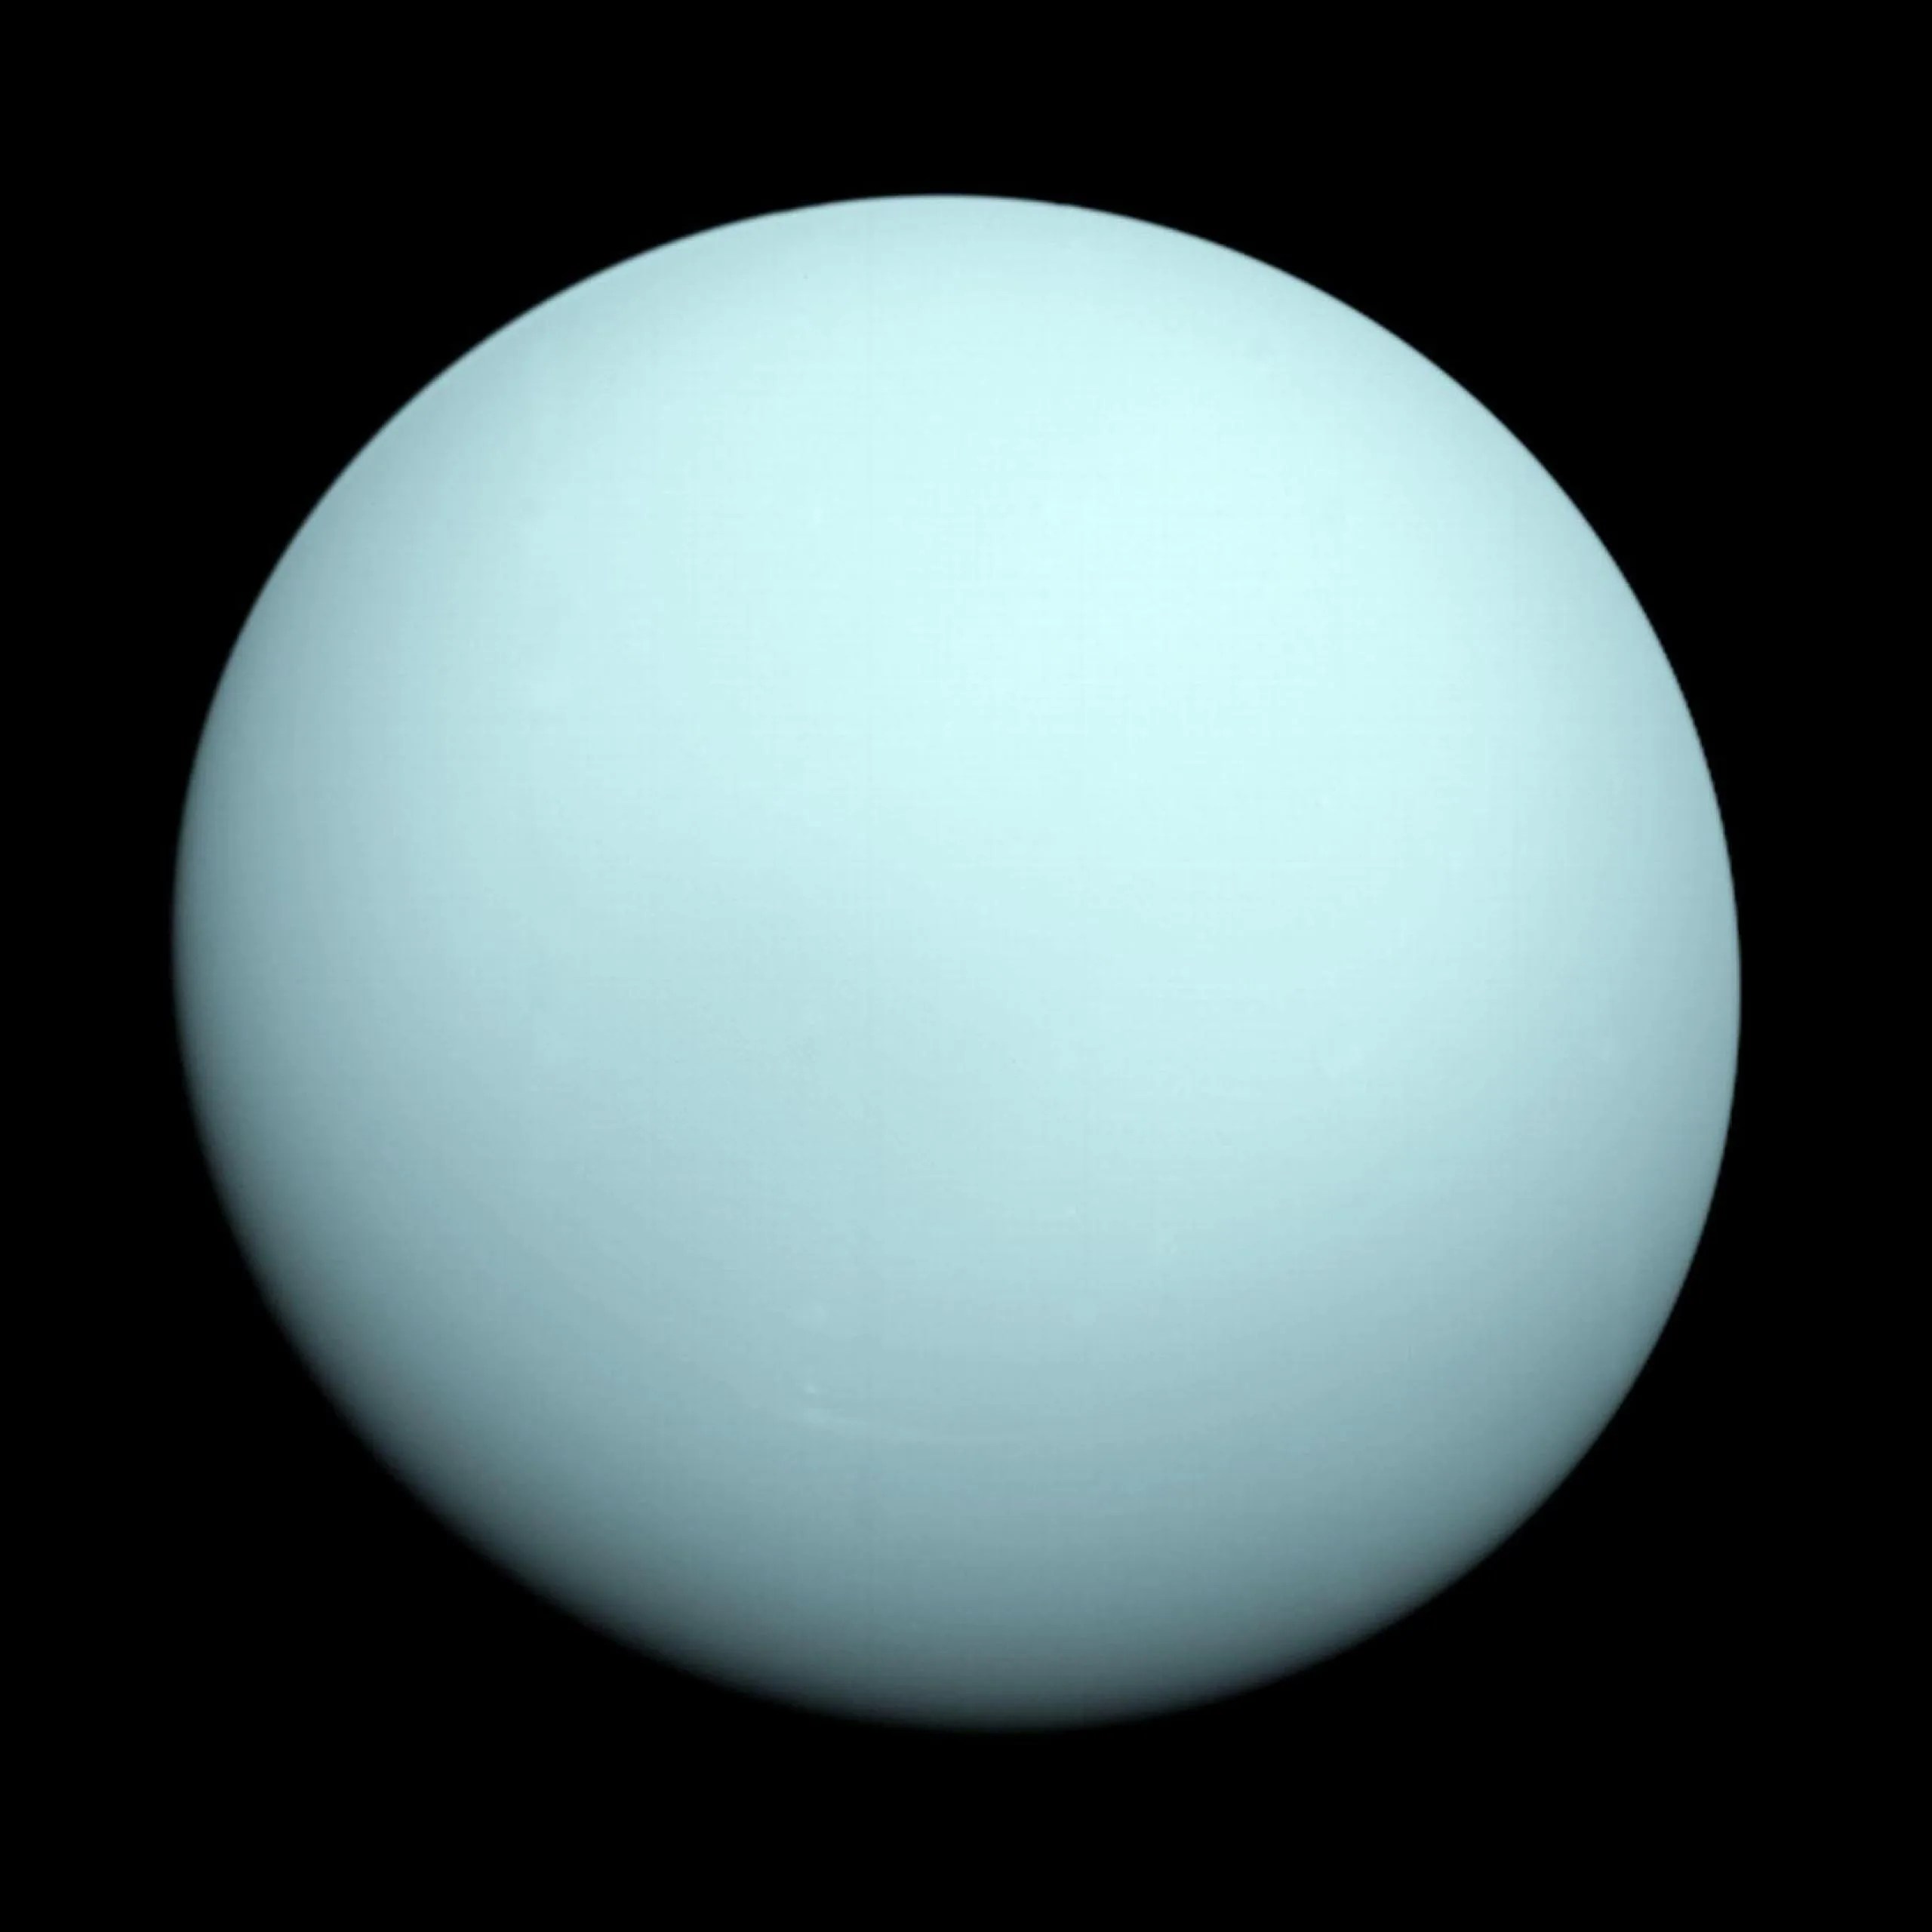 Esta es una imagen del planeta Urano tomada por la nave espacial Voyager 2 en 1986. Créditos: NASA / JPL-Caltech